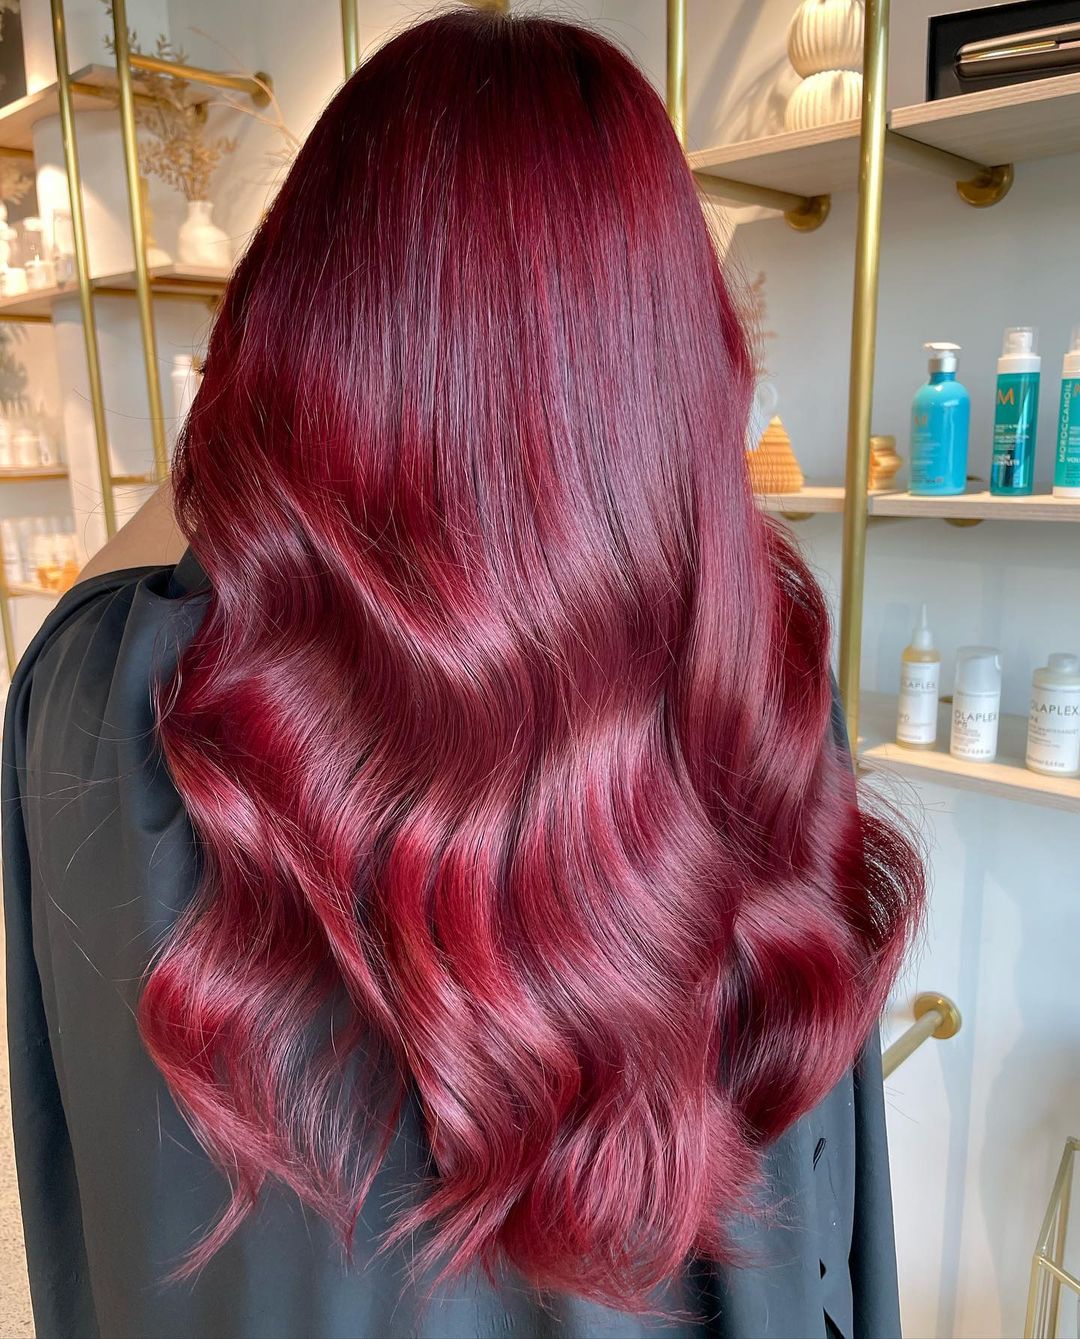 pelo largo y brillante rojo cereza